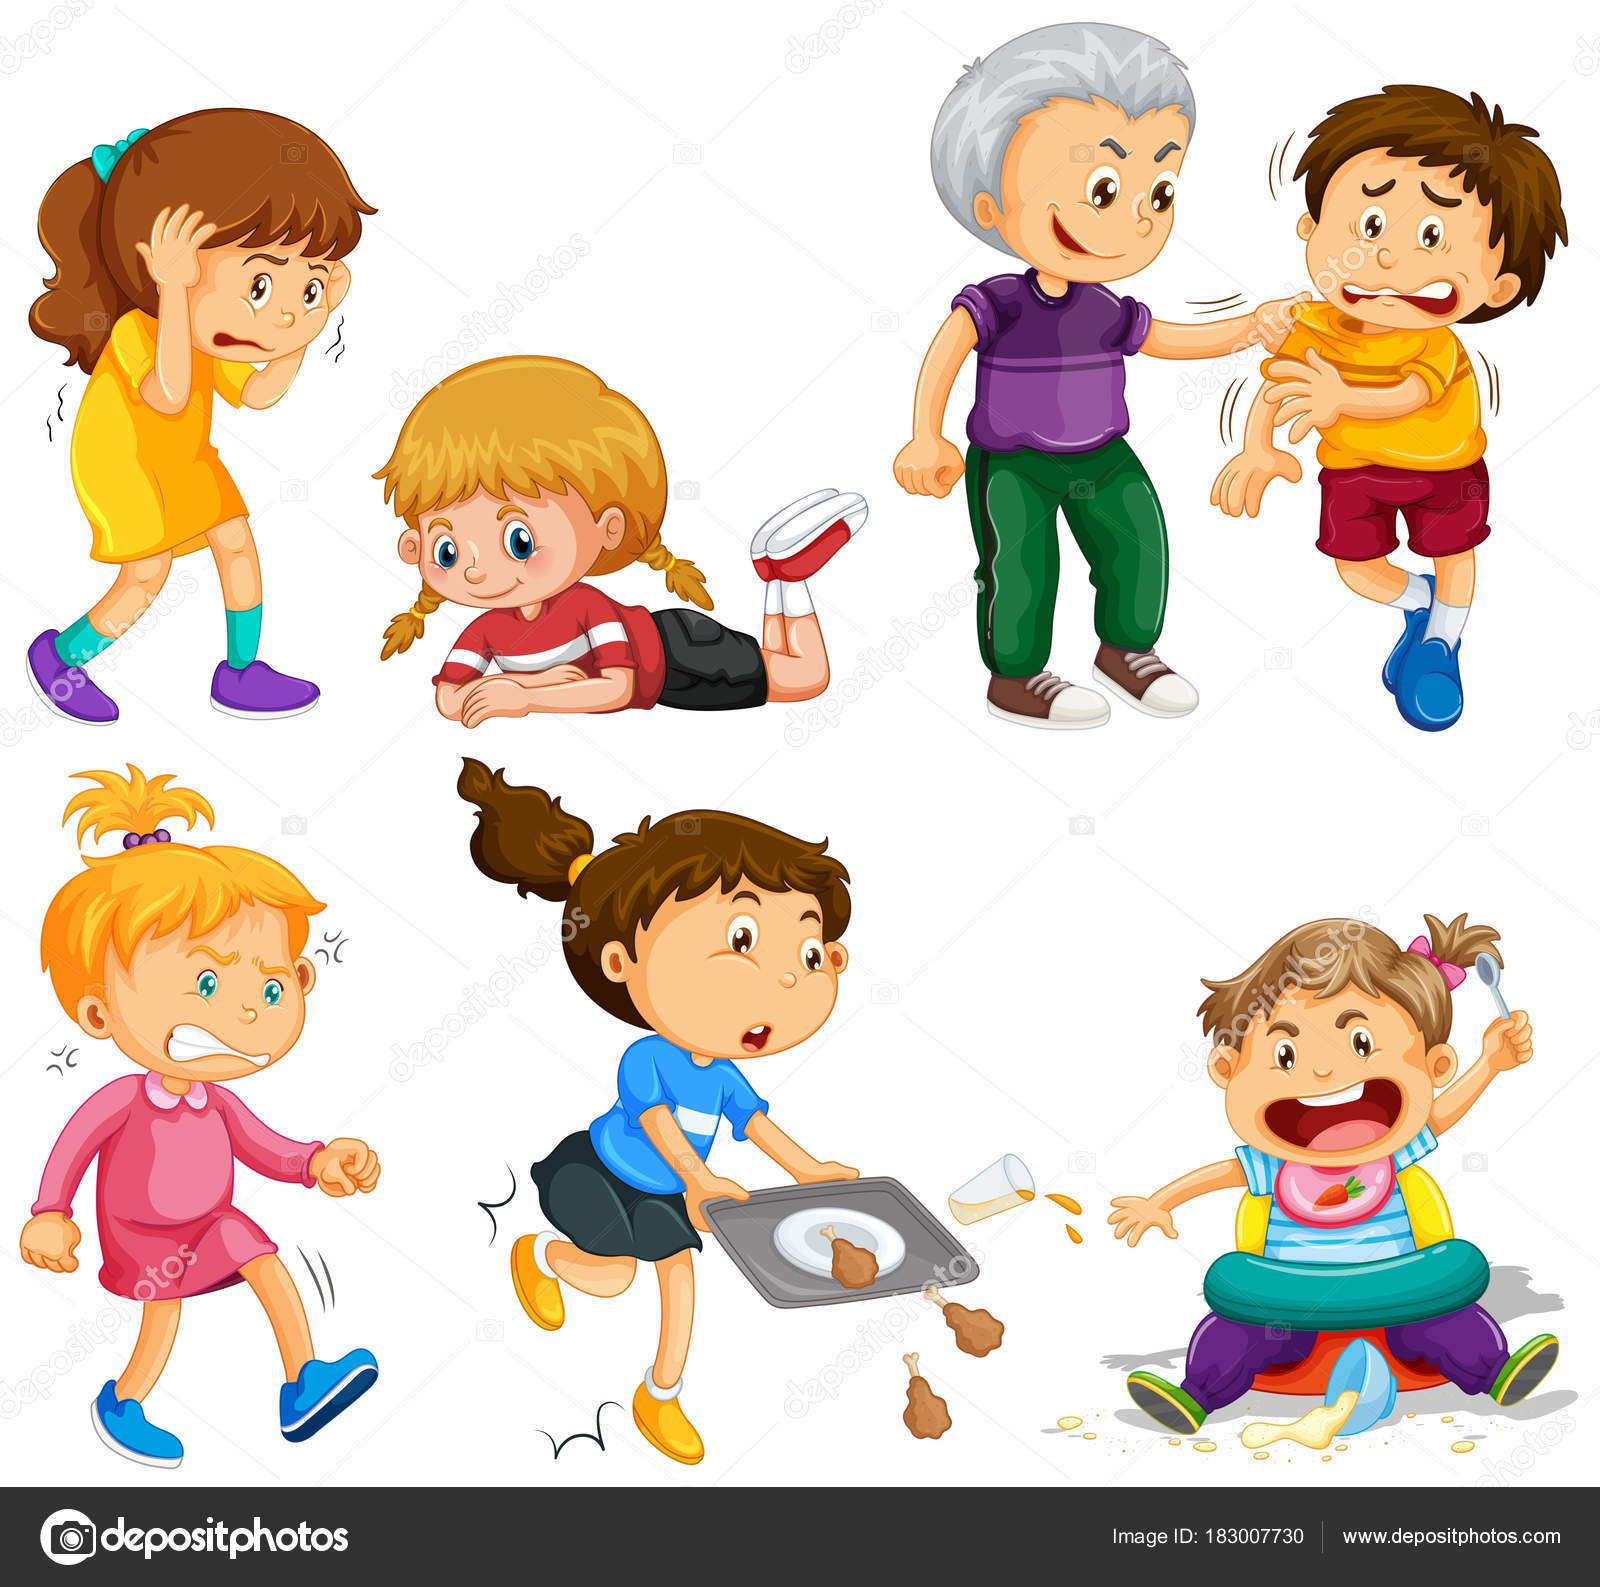 niñas y niños en diferentes actividades ilustración de stock de